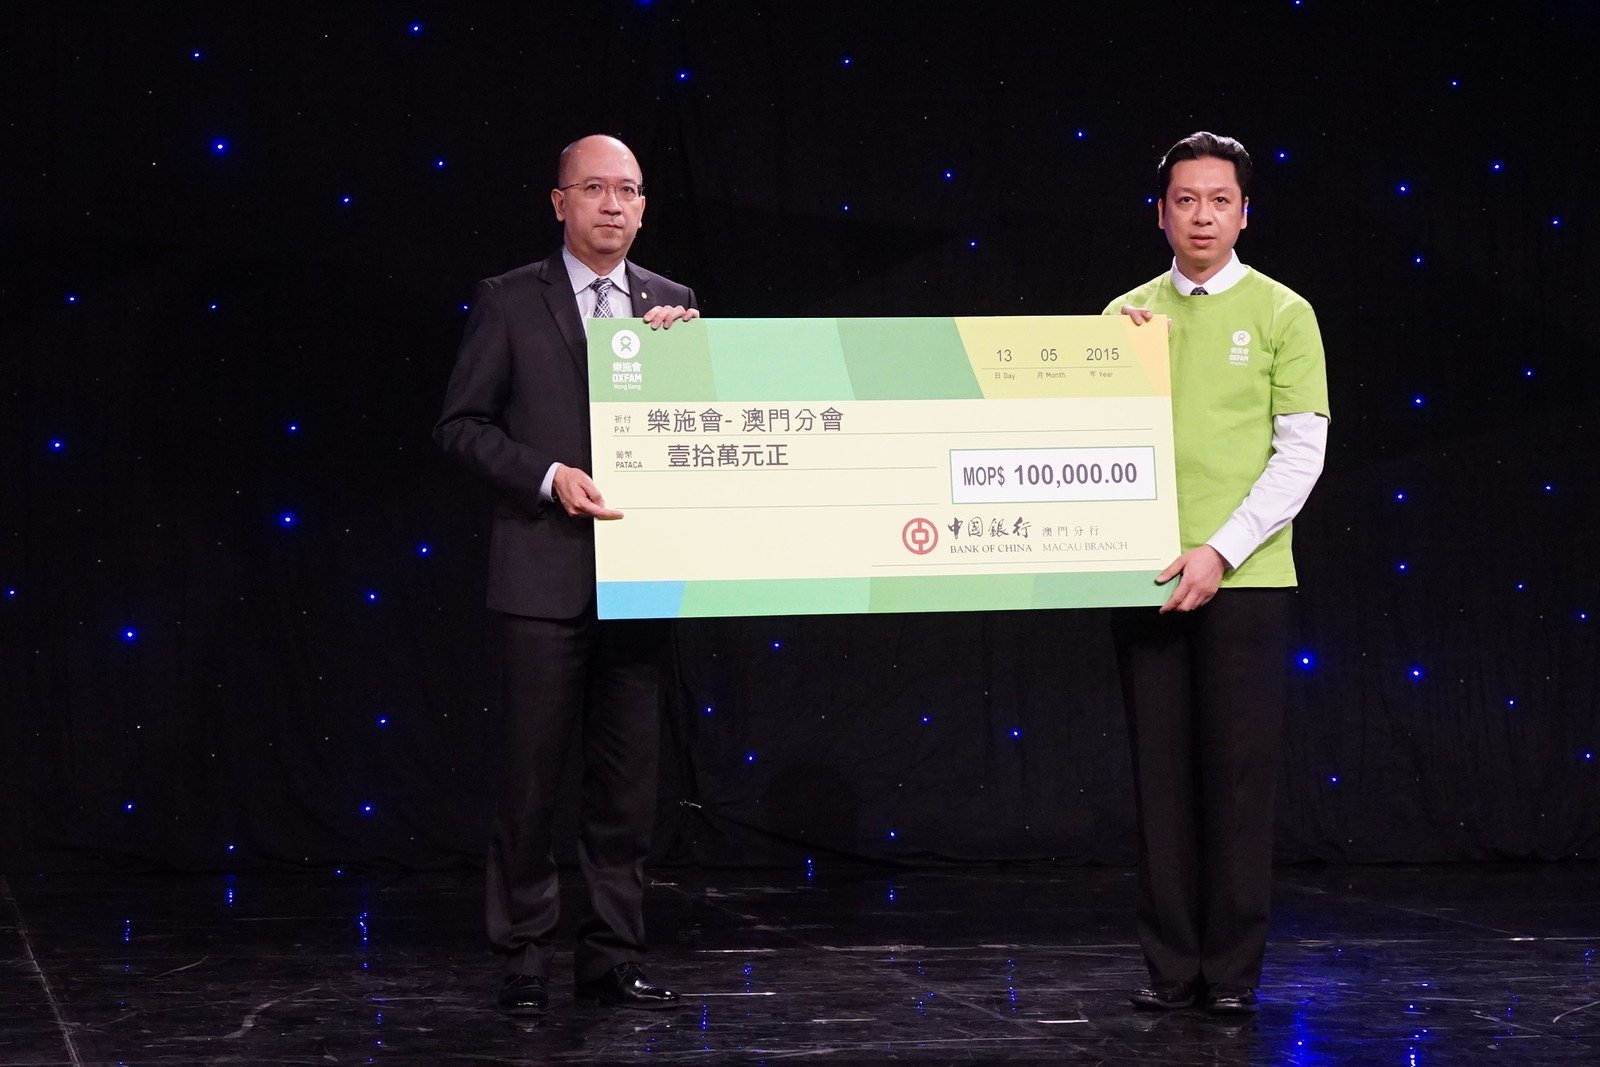 乐施会澳门分会顾问岑一峰(右)代表乐施会接受中国银行的支票捐赠。